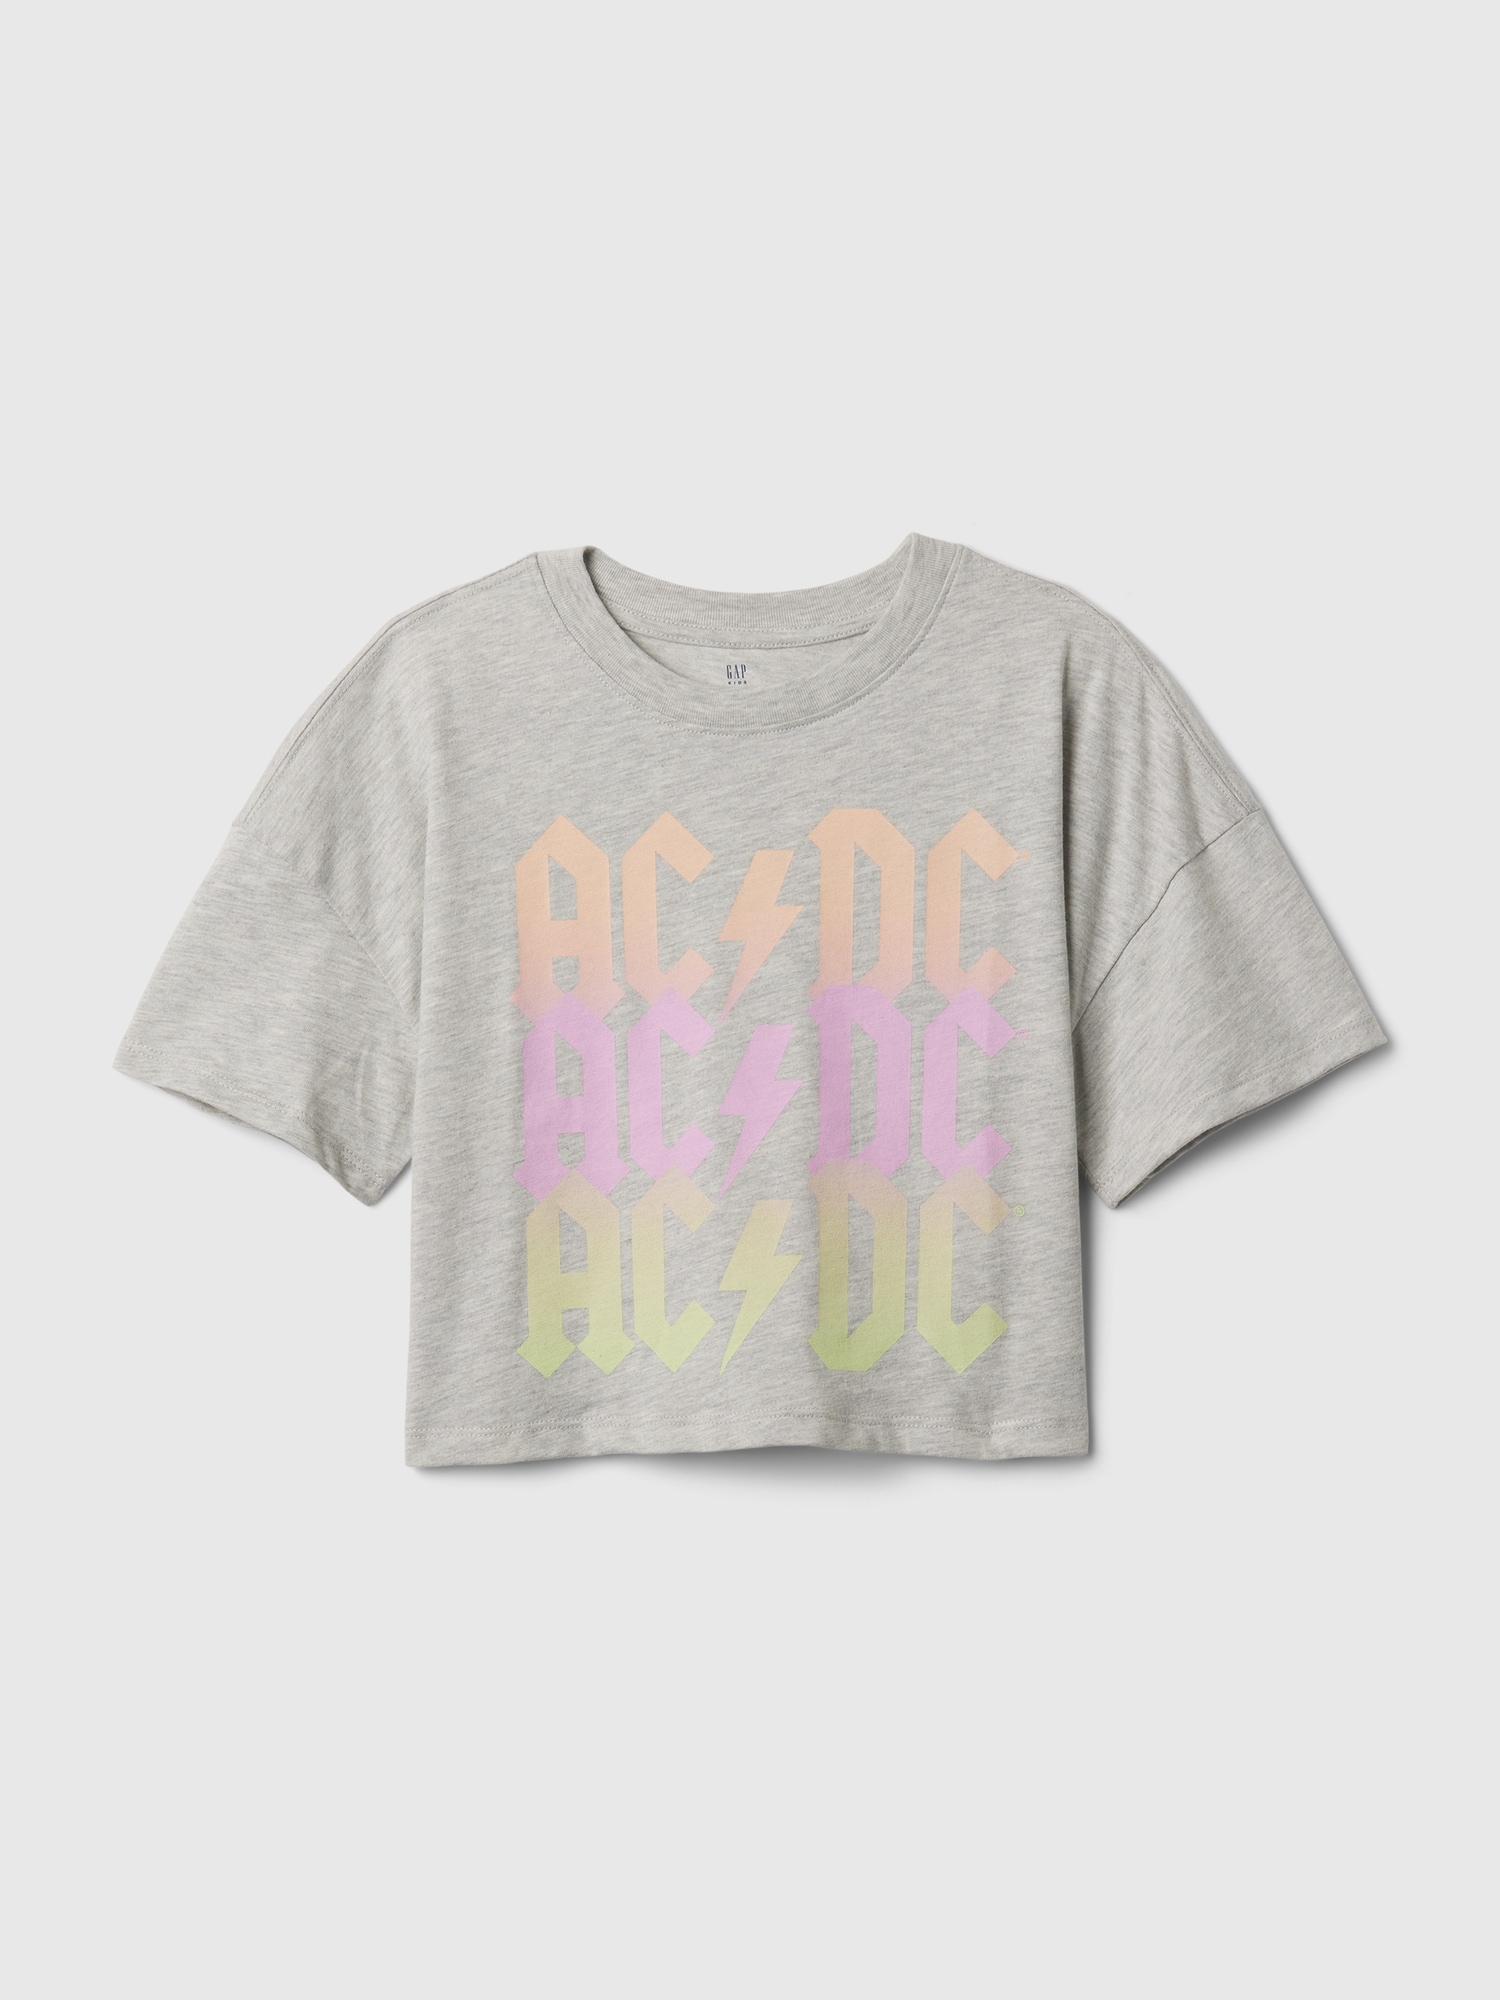 갭 Kids Band Graphic T-Shirt